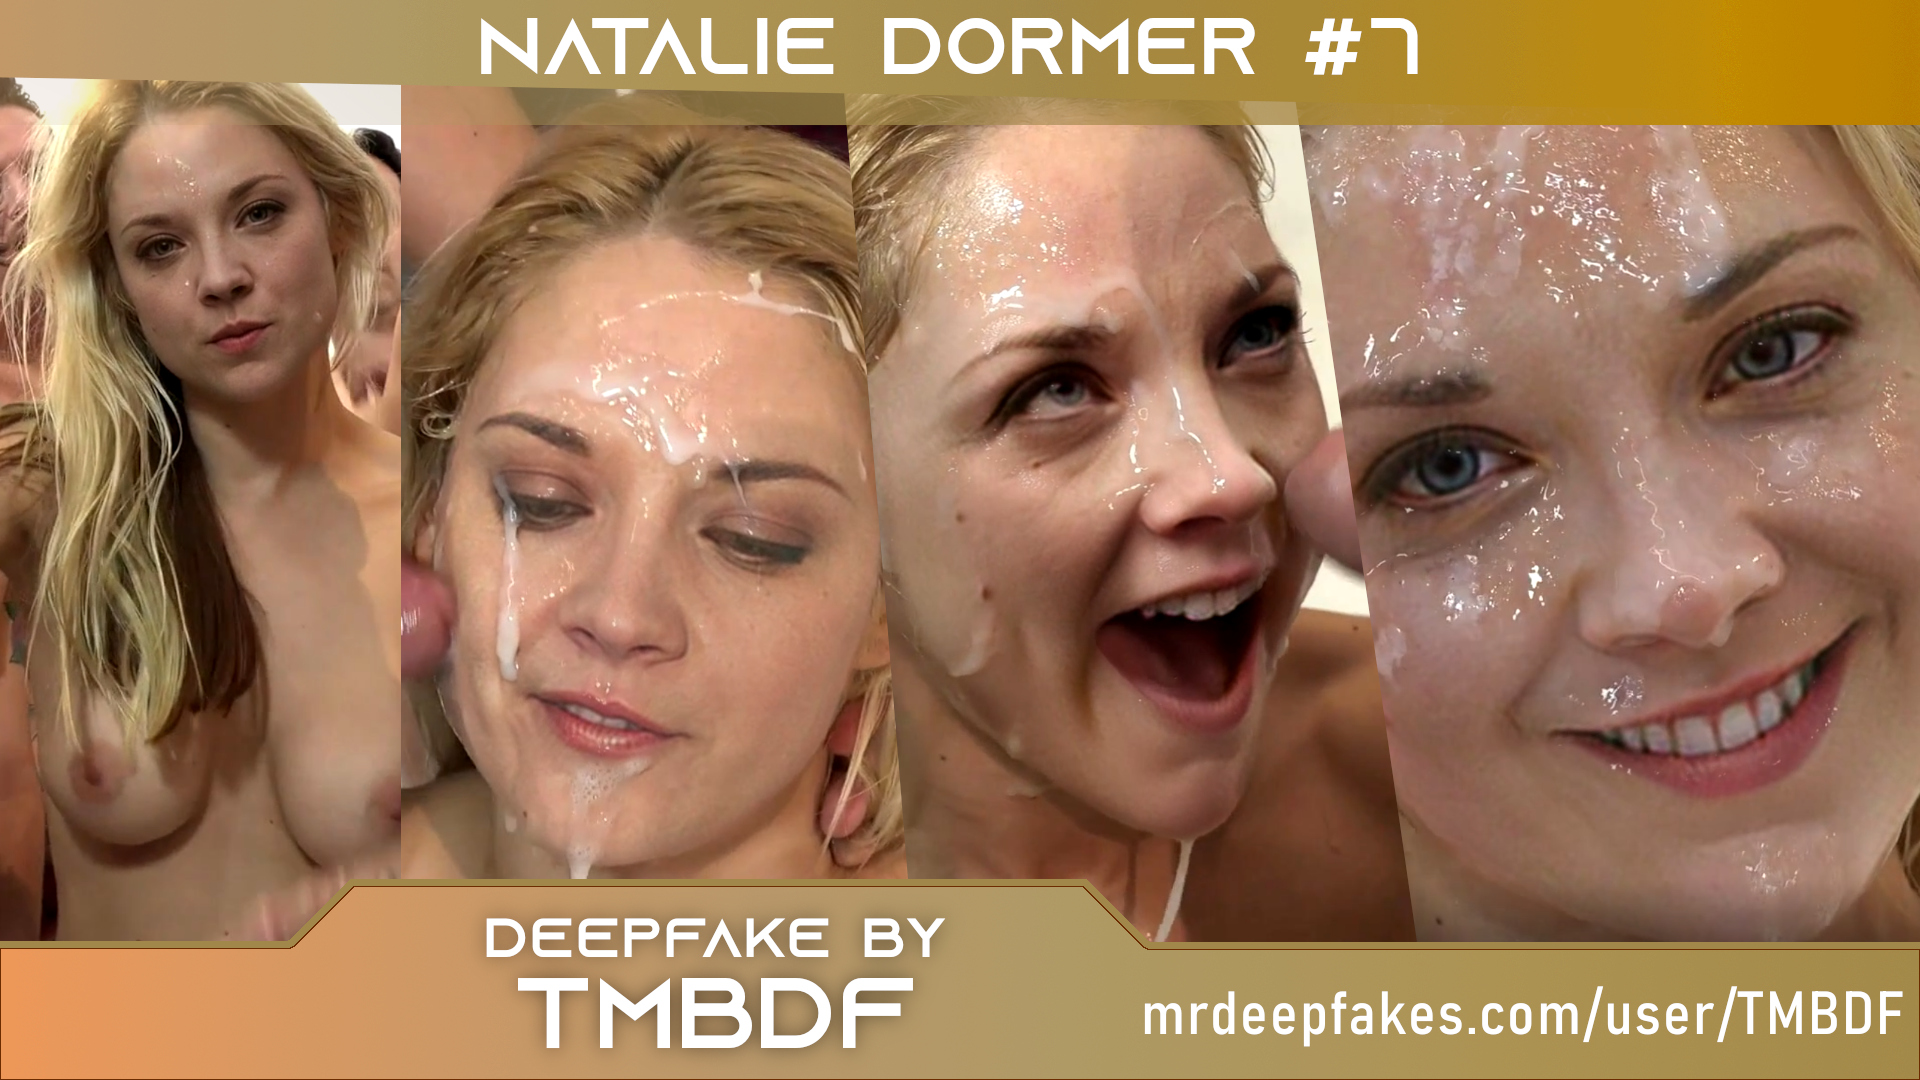 Bukkake with Natalie Dormer lookalike #7 (FULL VIDEO)